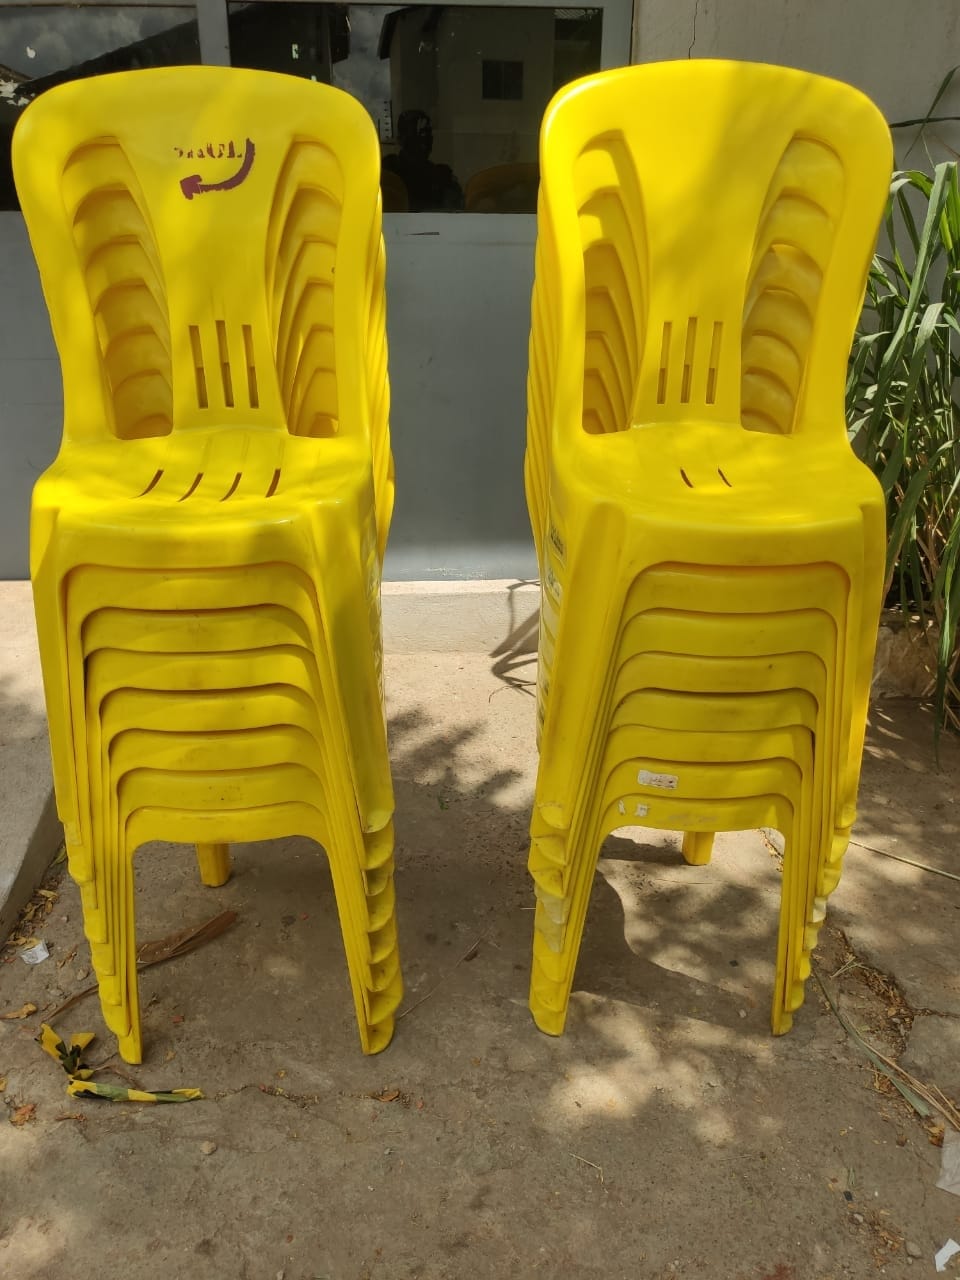 Dupla é presa após furtar 16 cadeiras de plástico de um estabelecimento comercial em Picos